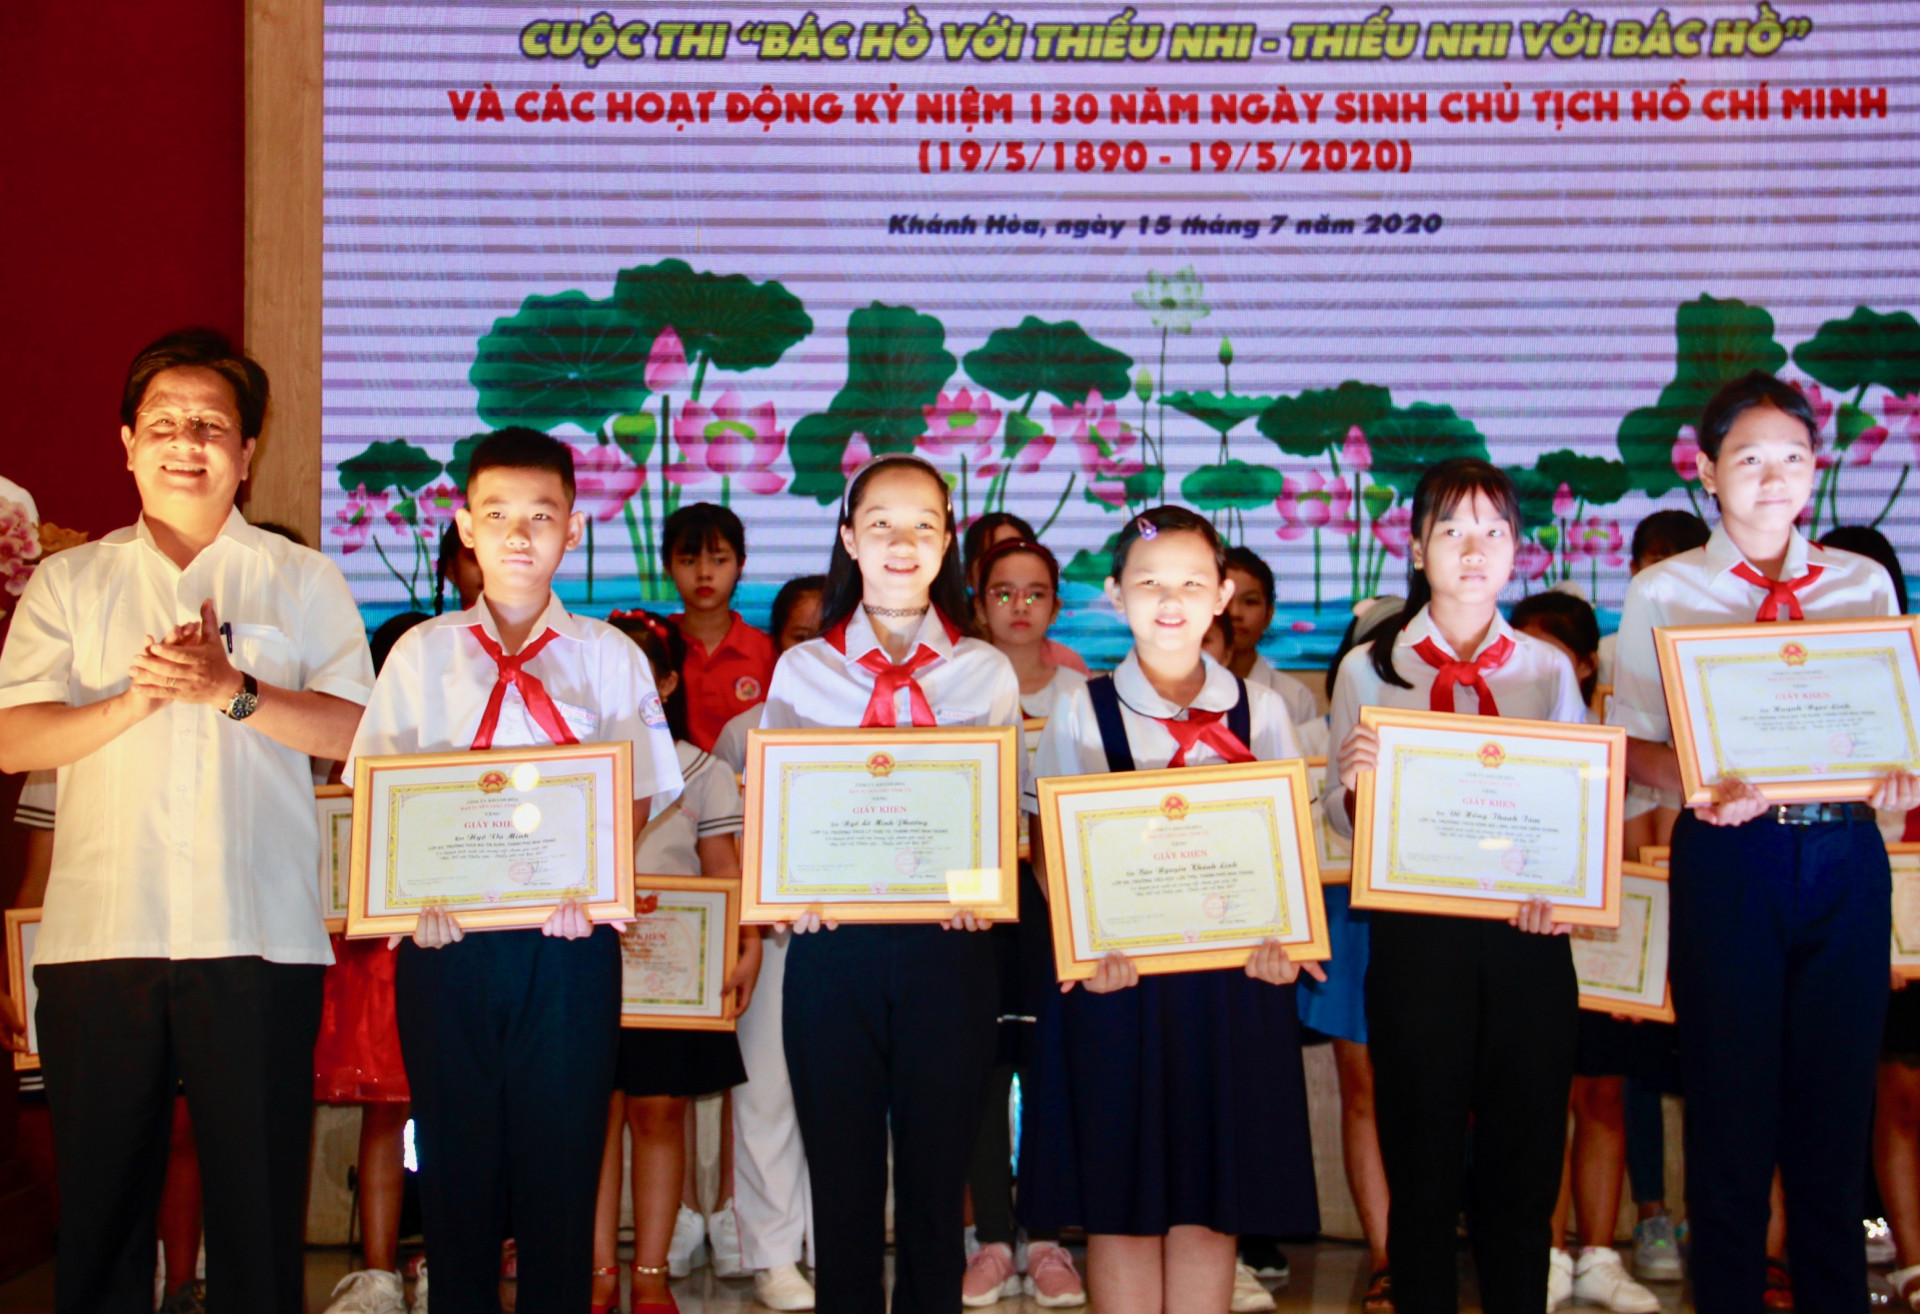 Ông Hồ Văn Mừng trao giấy khen của Ban Tuyên giáo Tỉnh ủy cho 5 học sinh xuất sắc đạt các giải thưởng cao tại cuộc thi.